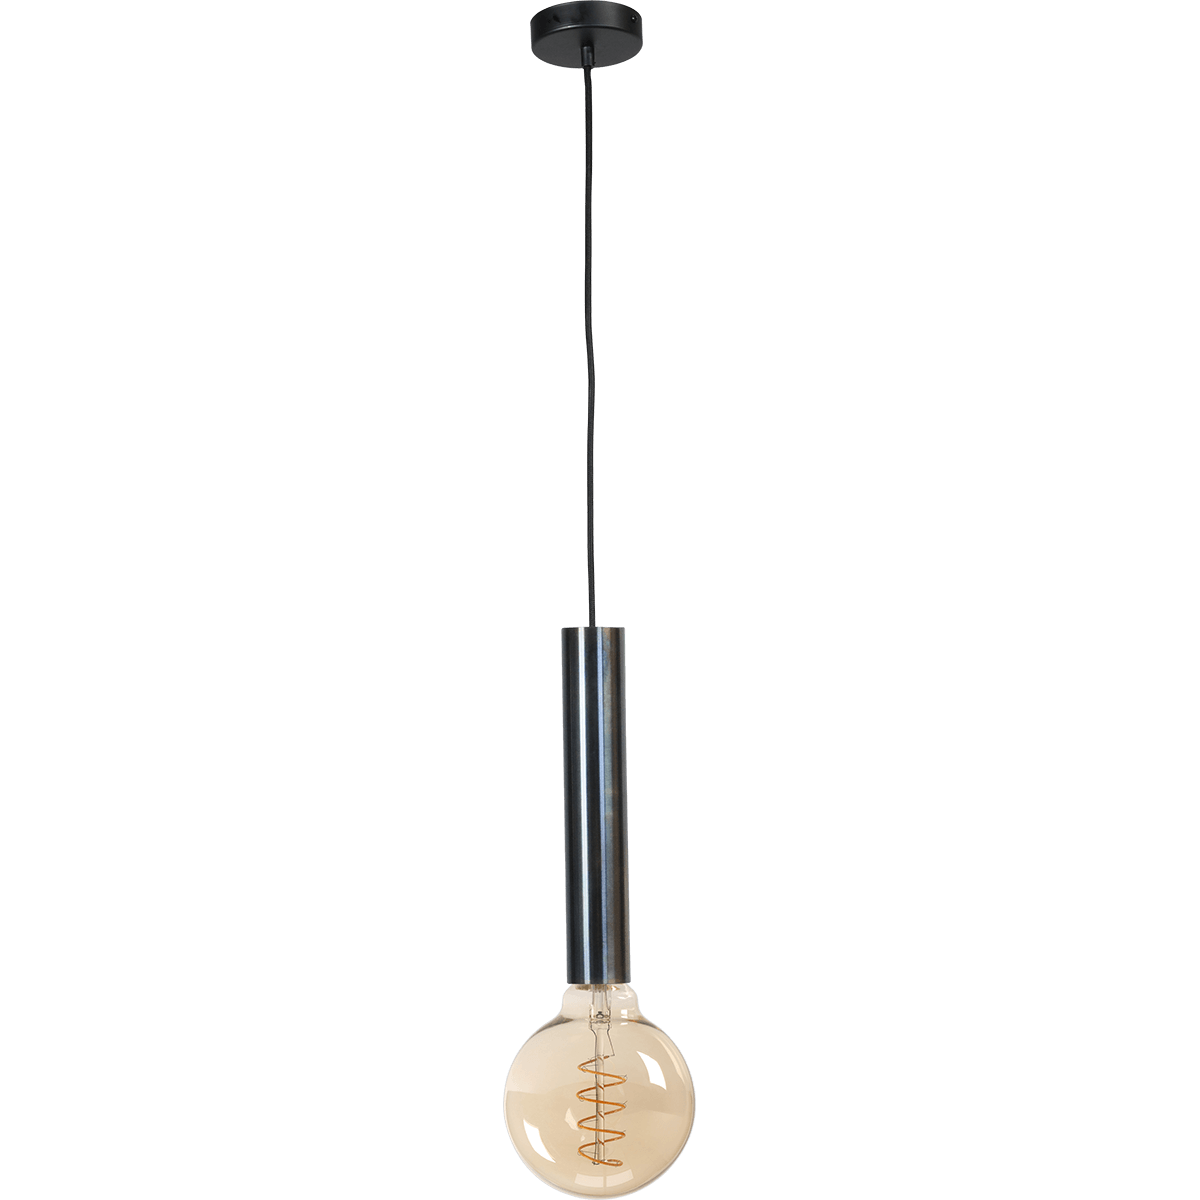 Hanglamp Tomasso 1-lichts dappled oil E27 - Ø45x250mm -  zwarte stoffen kabel 200cm - MASTERLIGHT